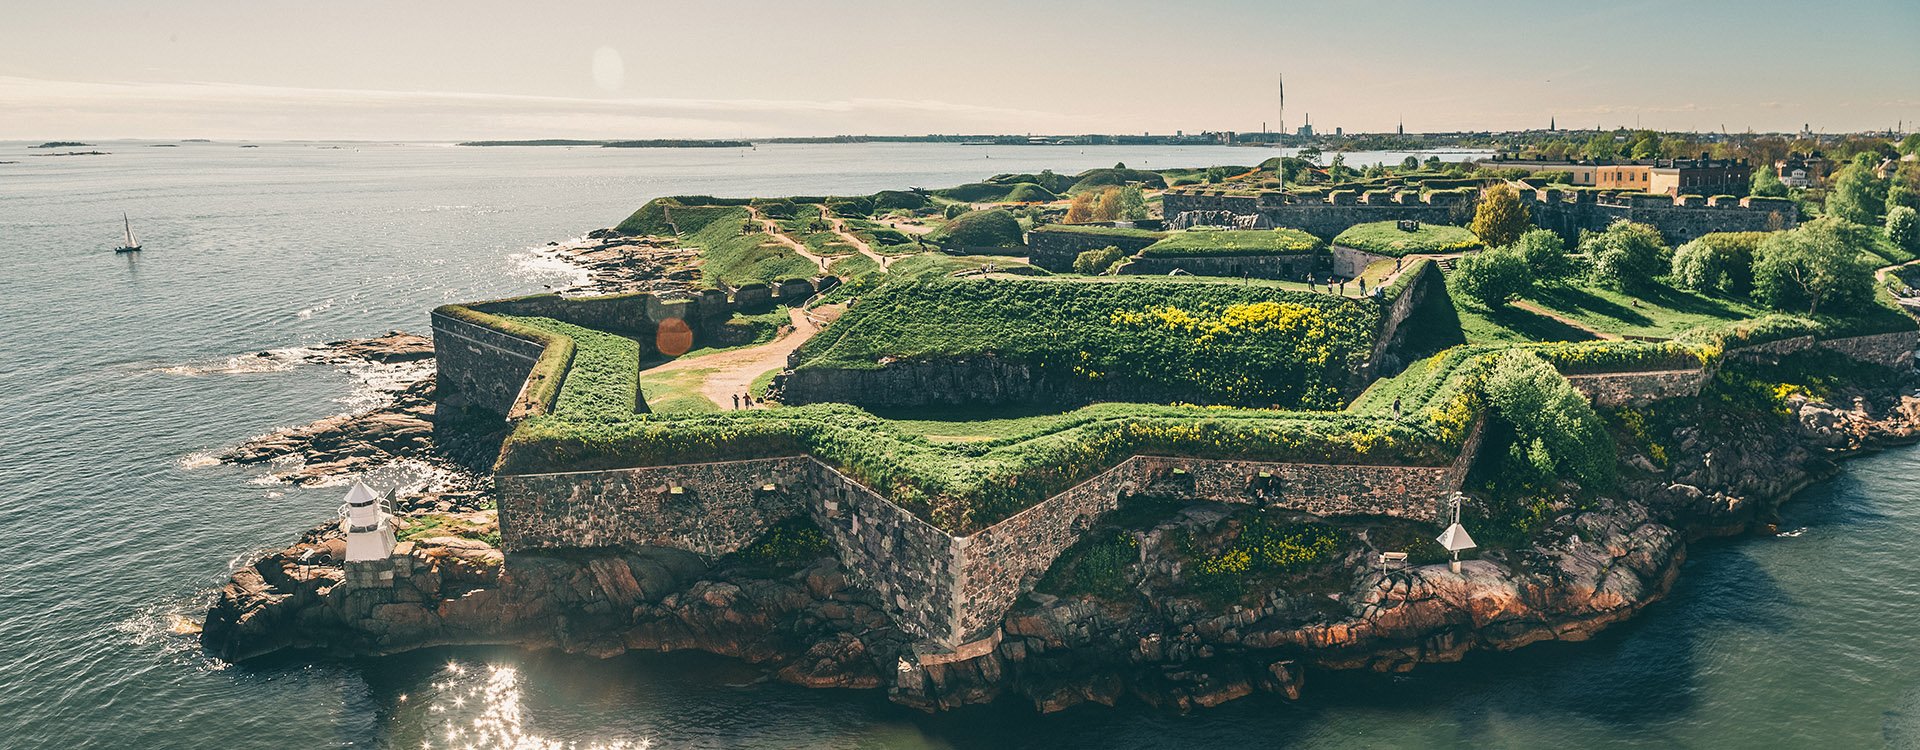 Bastions of finnish fortress Suomenlinna, Helsinki, Finland